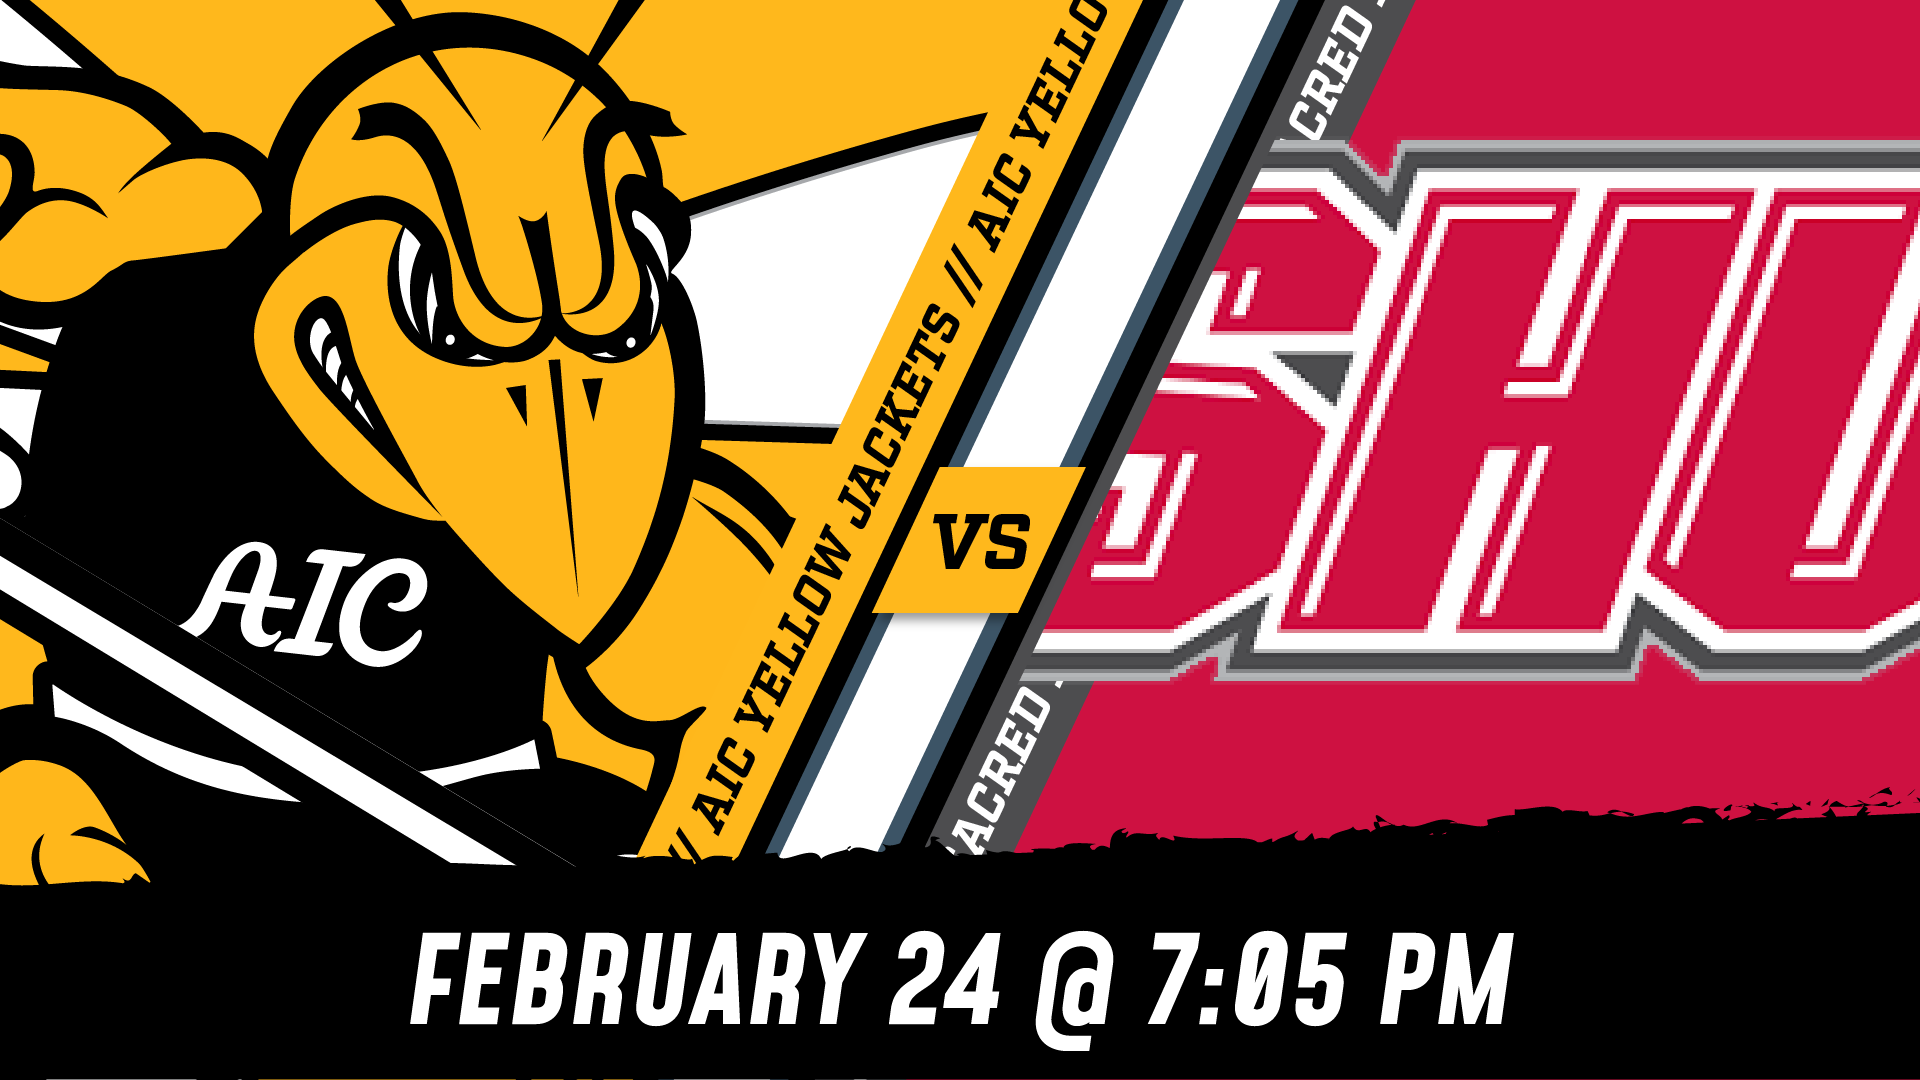 TONIGHT: AIC Men's Hockey vs. Sacred Heart